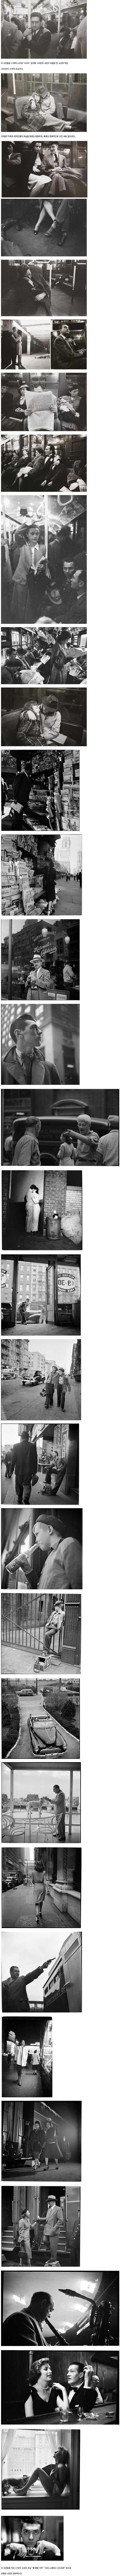 17세 소년이 촬영한 1945년 뉴욕